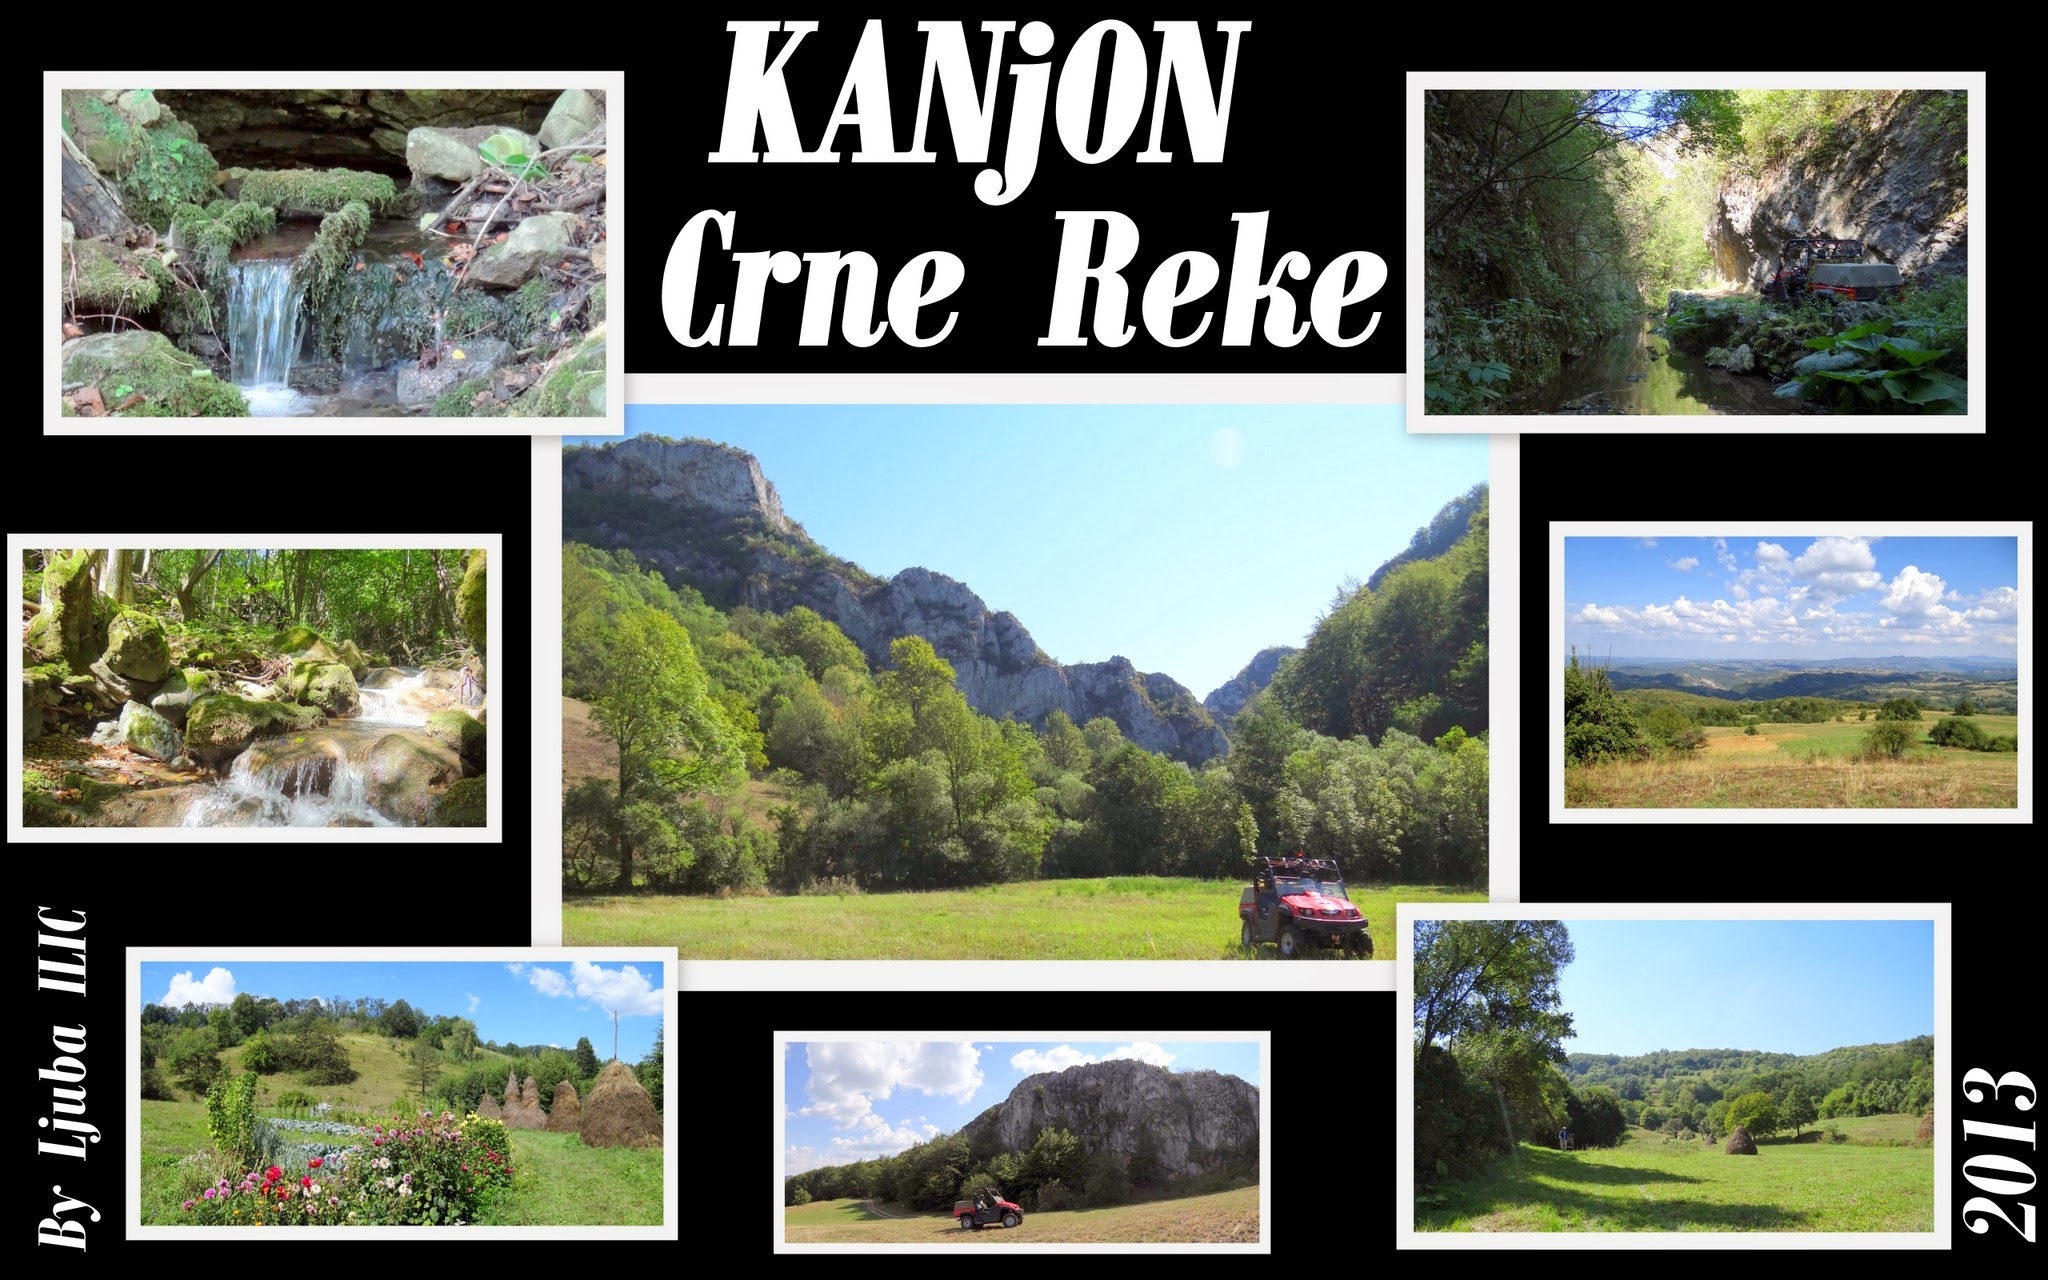 Black River Homolje - Kanjon Crne Reke 2013 cover image